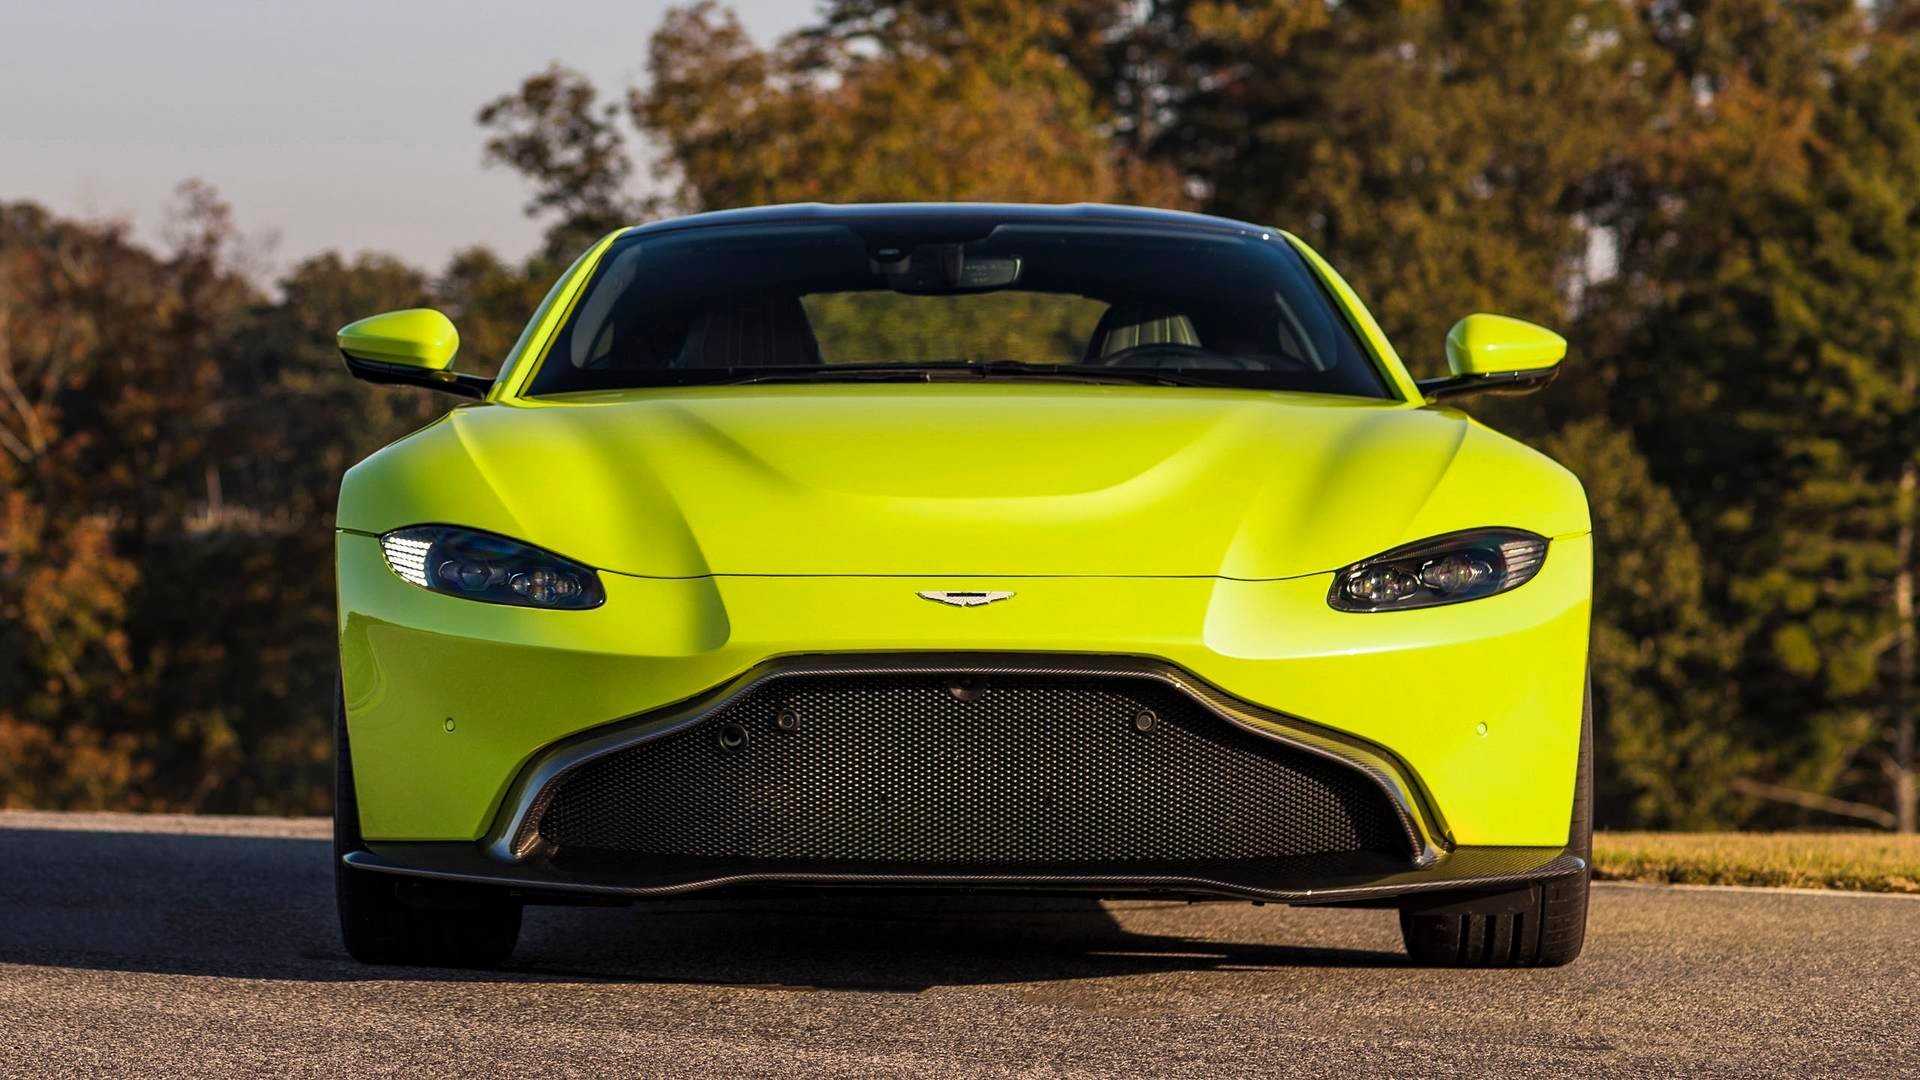 Компания Aston Martin официально представила купе Vantage второго поколения Новая модель получила полностью перекроенную внешность и турбомотор от AMG